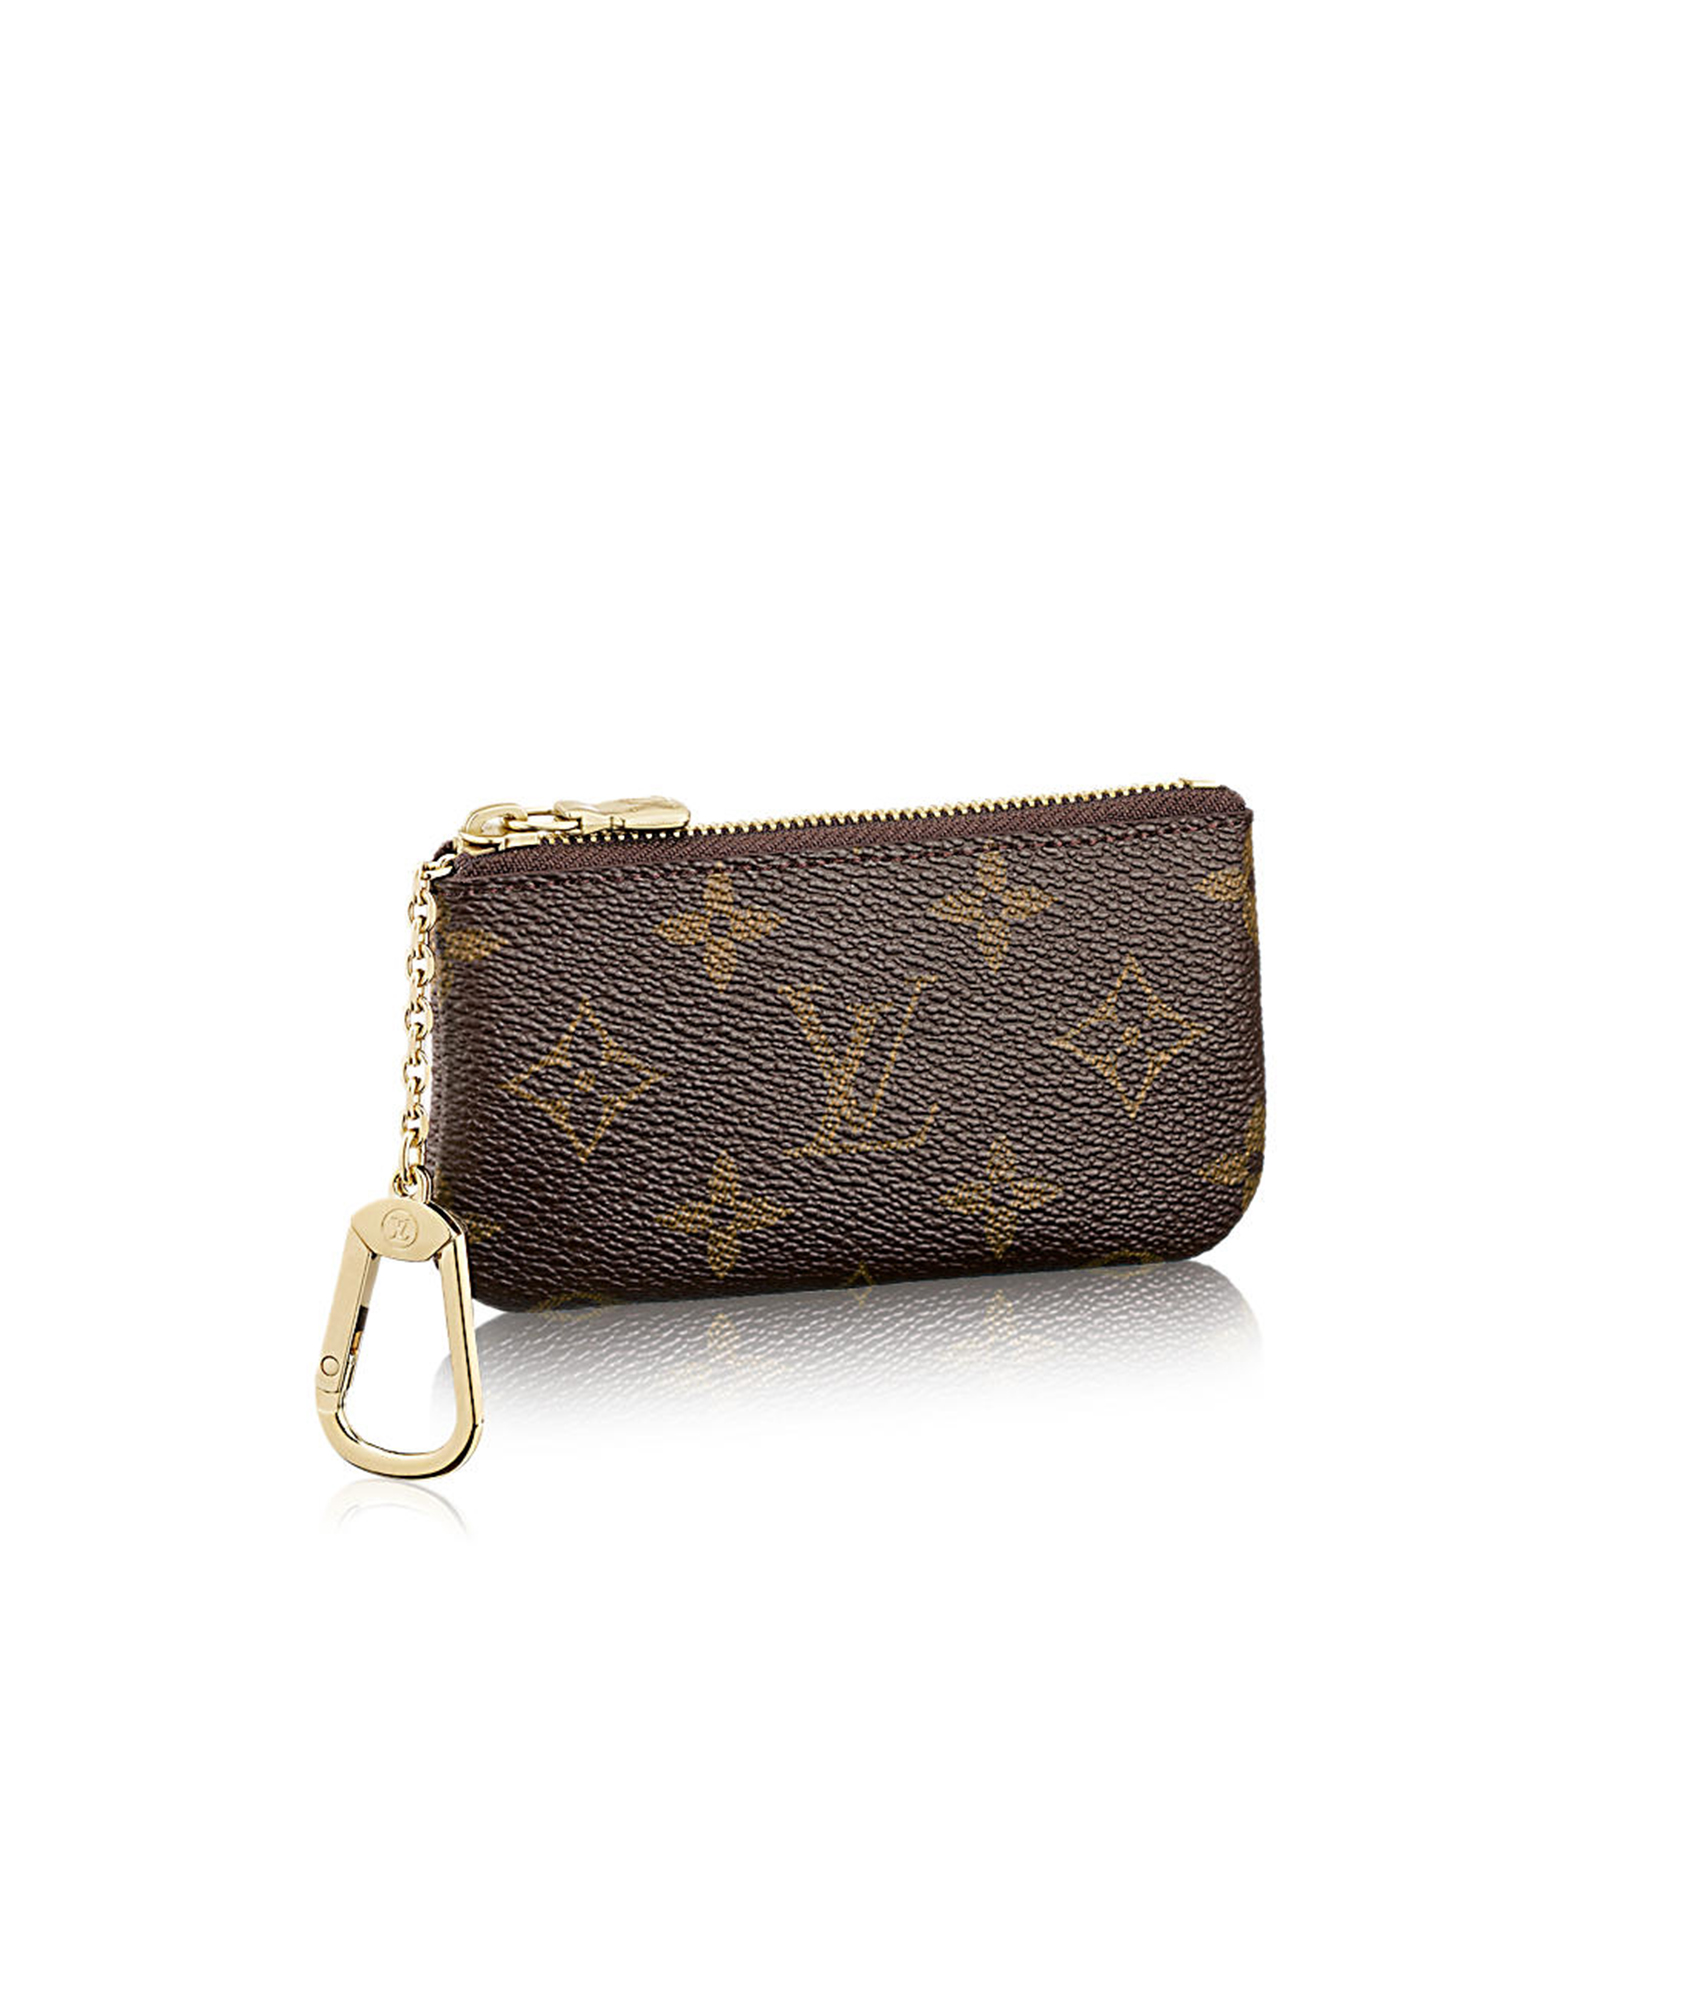 Designer Items Worth The Splurge | Louis Vuitton Card Holder | Blondie in the City by Hayley Larue